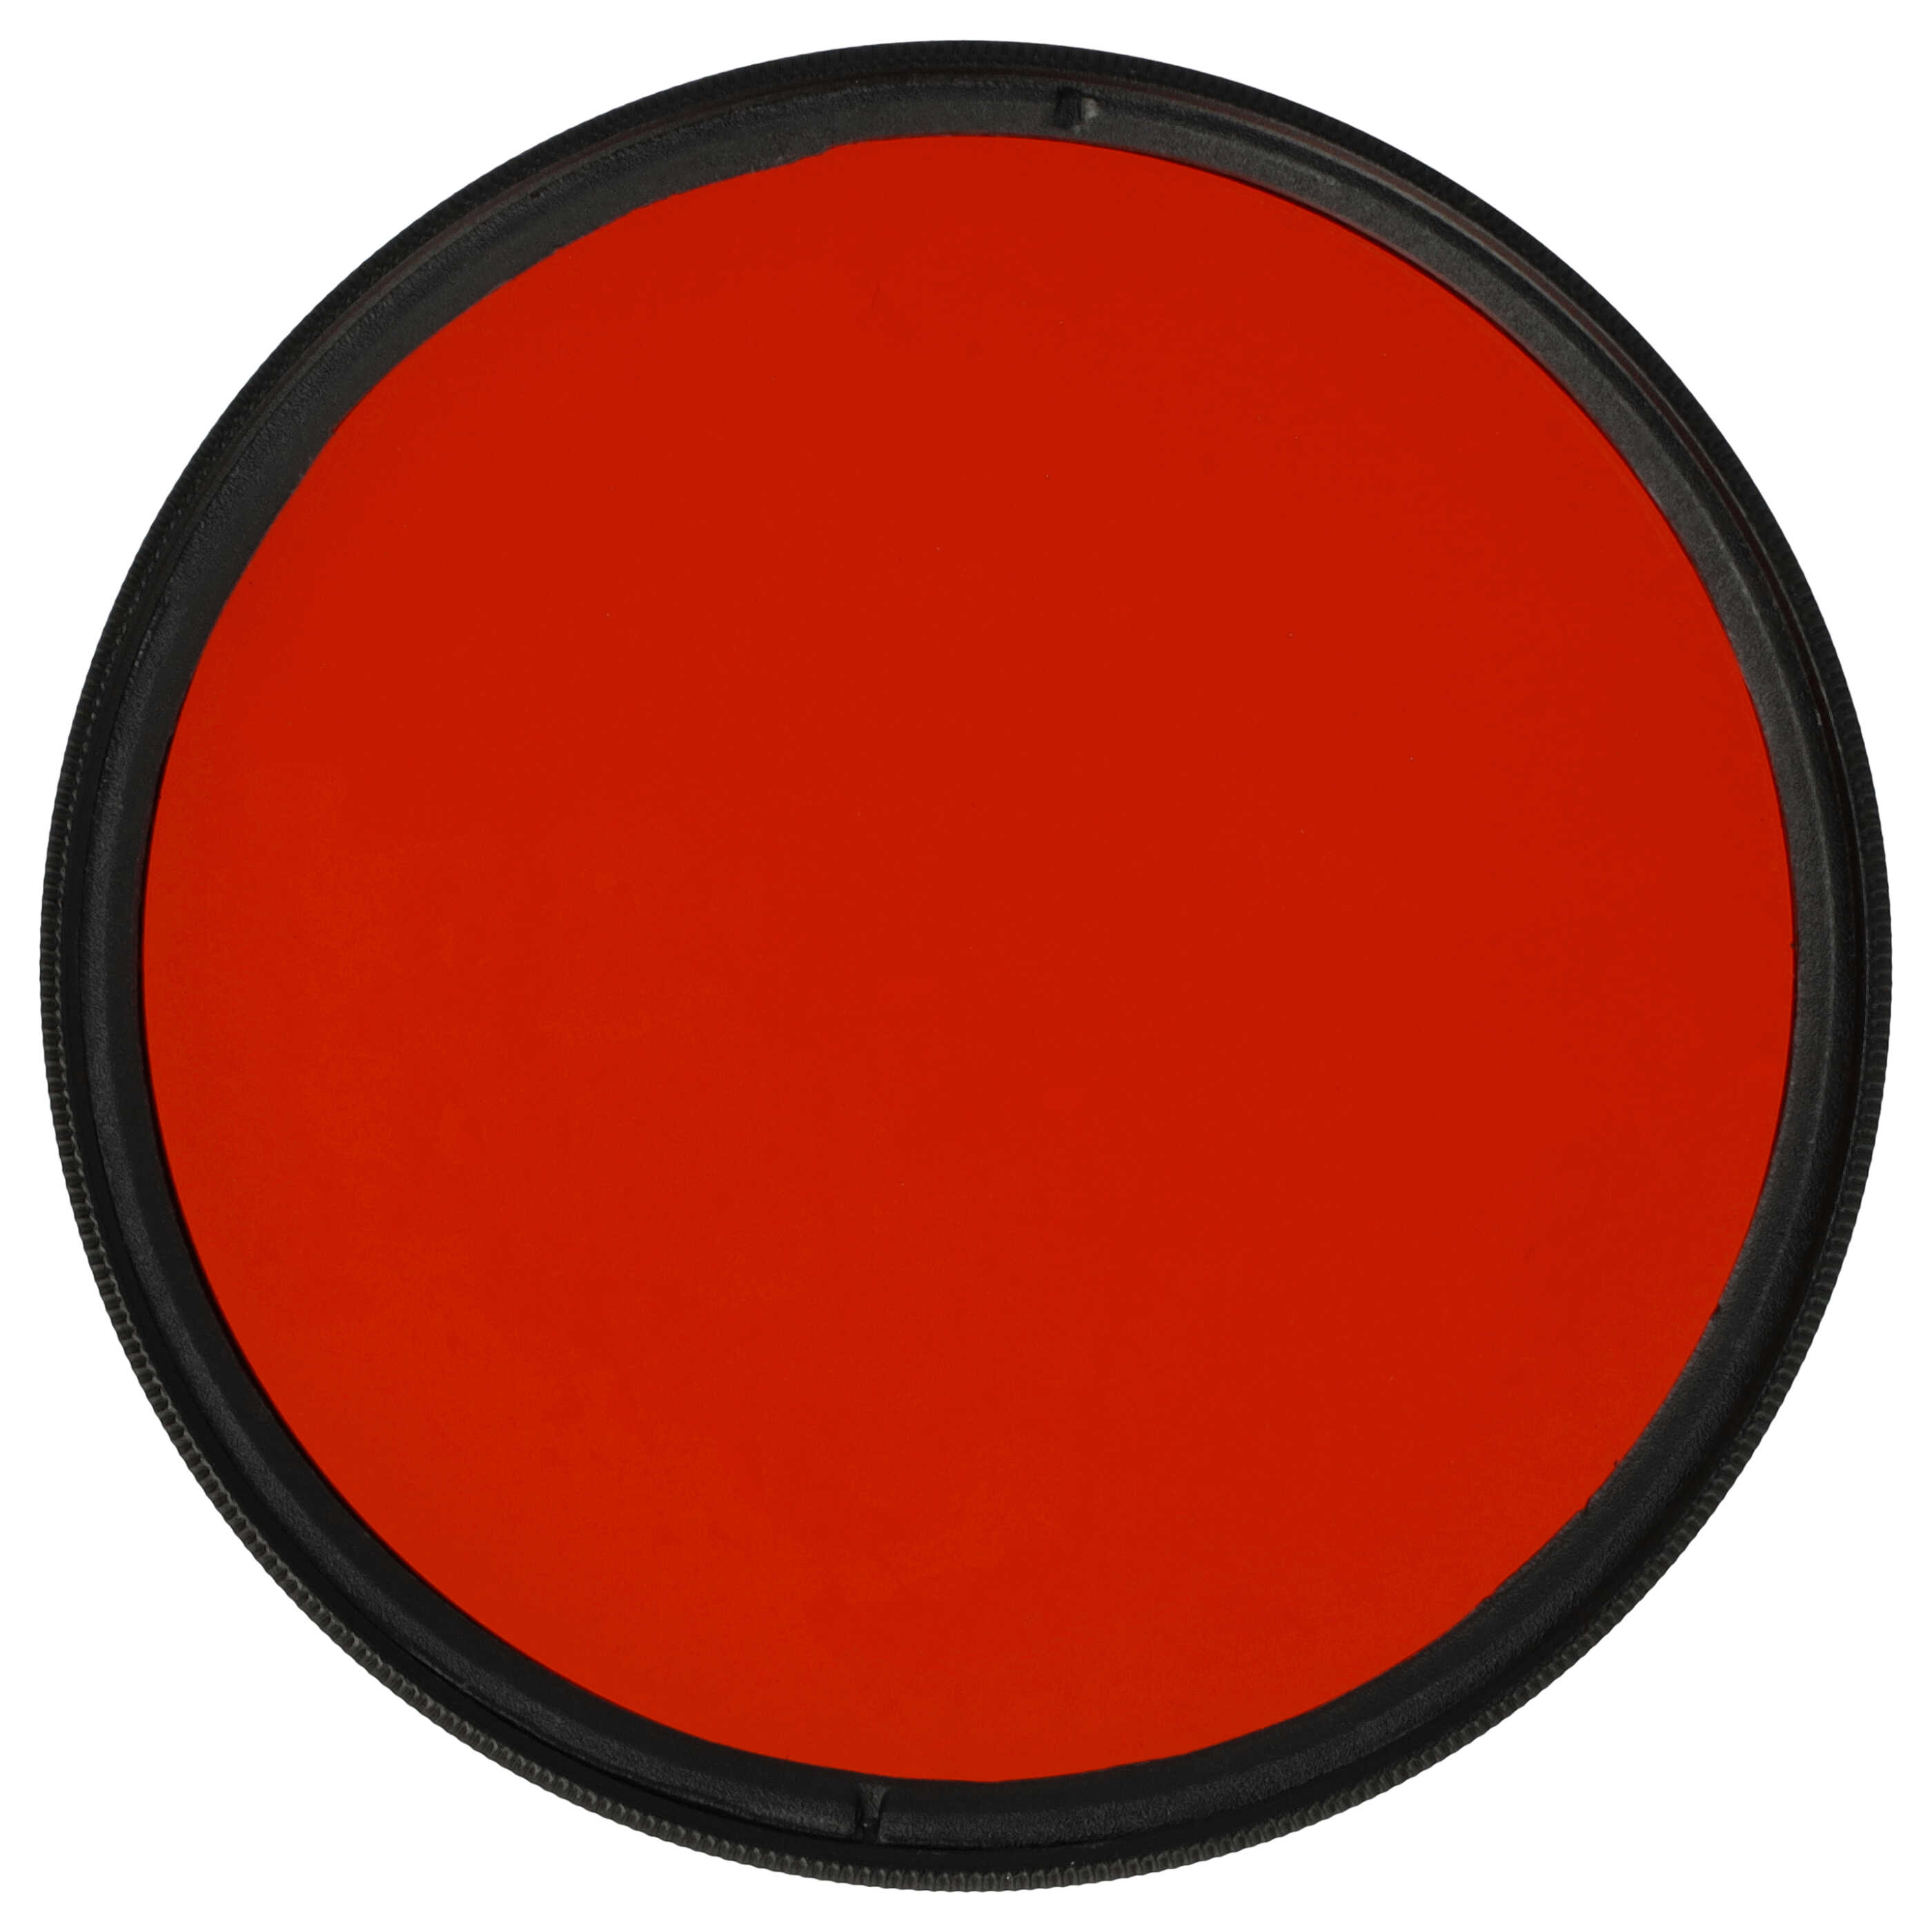 Farbfilter orange passend für Kamera Objektive mit 67 mm Filtergewinde - Orangefilter